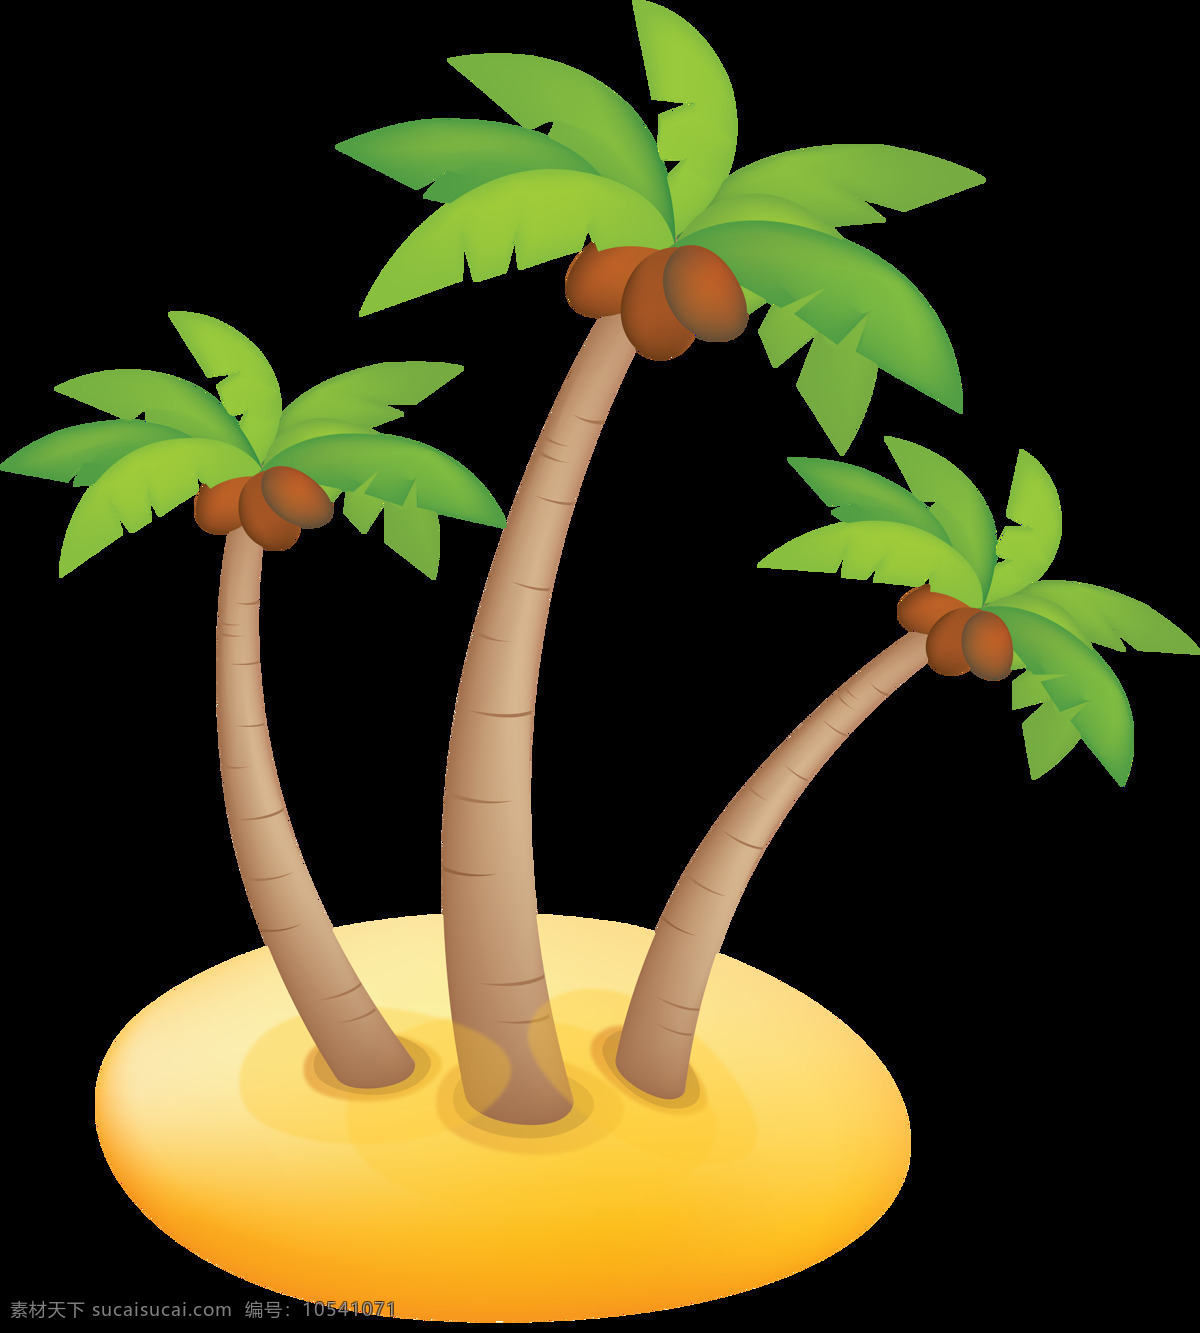 棕榈树 热带植物 夏季叶子 叶子 棕桐树 水彩树叶 芭蕉叶 卡通设计